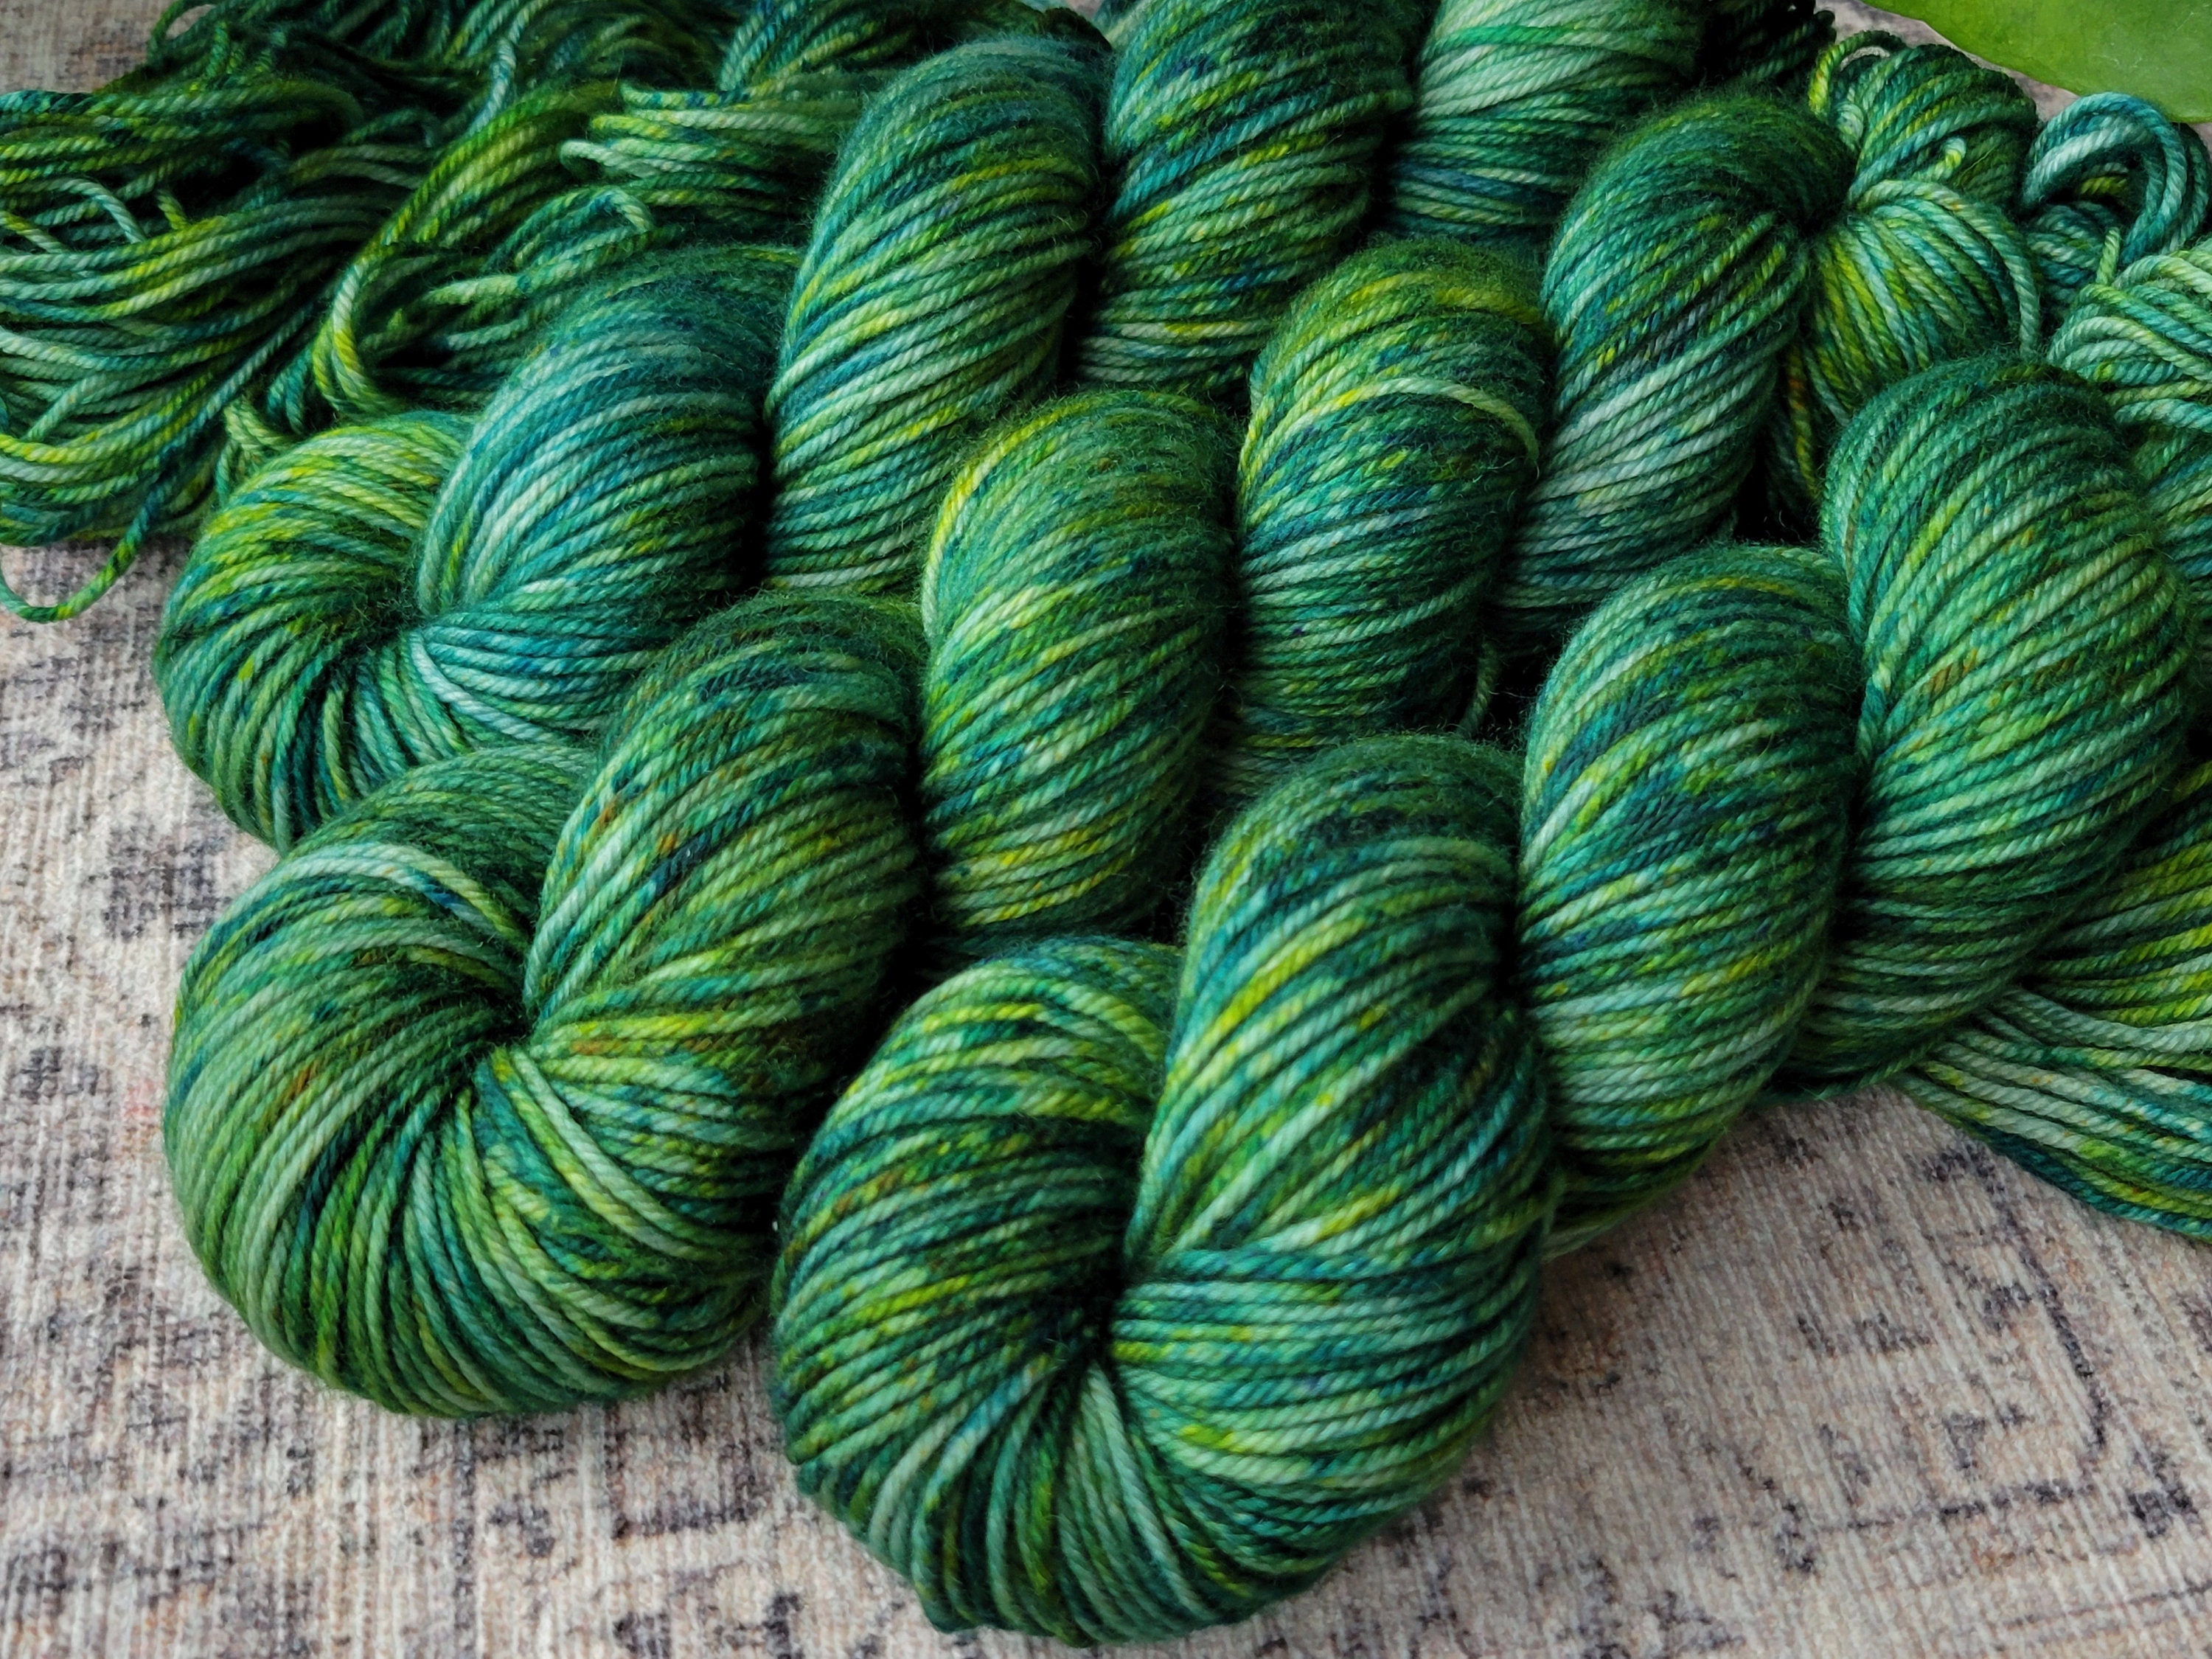 Fern Cliff: Dark Olive Green Yarn. Hand-dyed Wool Yarn. Tonal Green Yarn.  Earthy Moss Green. Army Green. Loden. Forest Green. Semi-solid. 